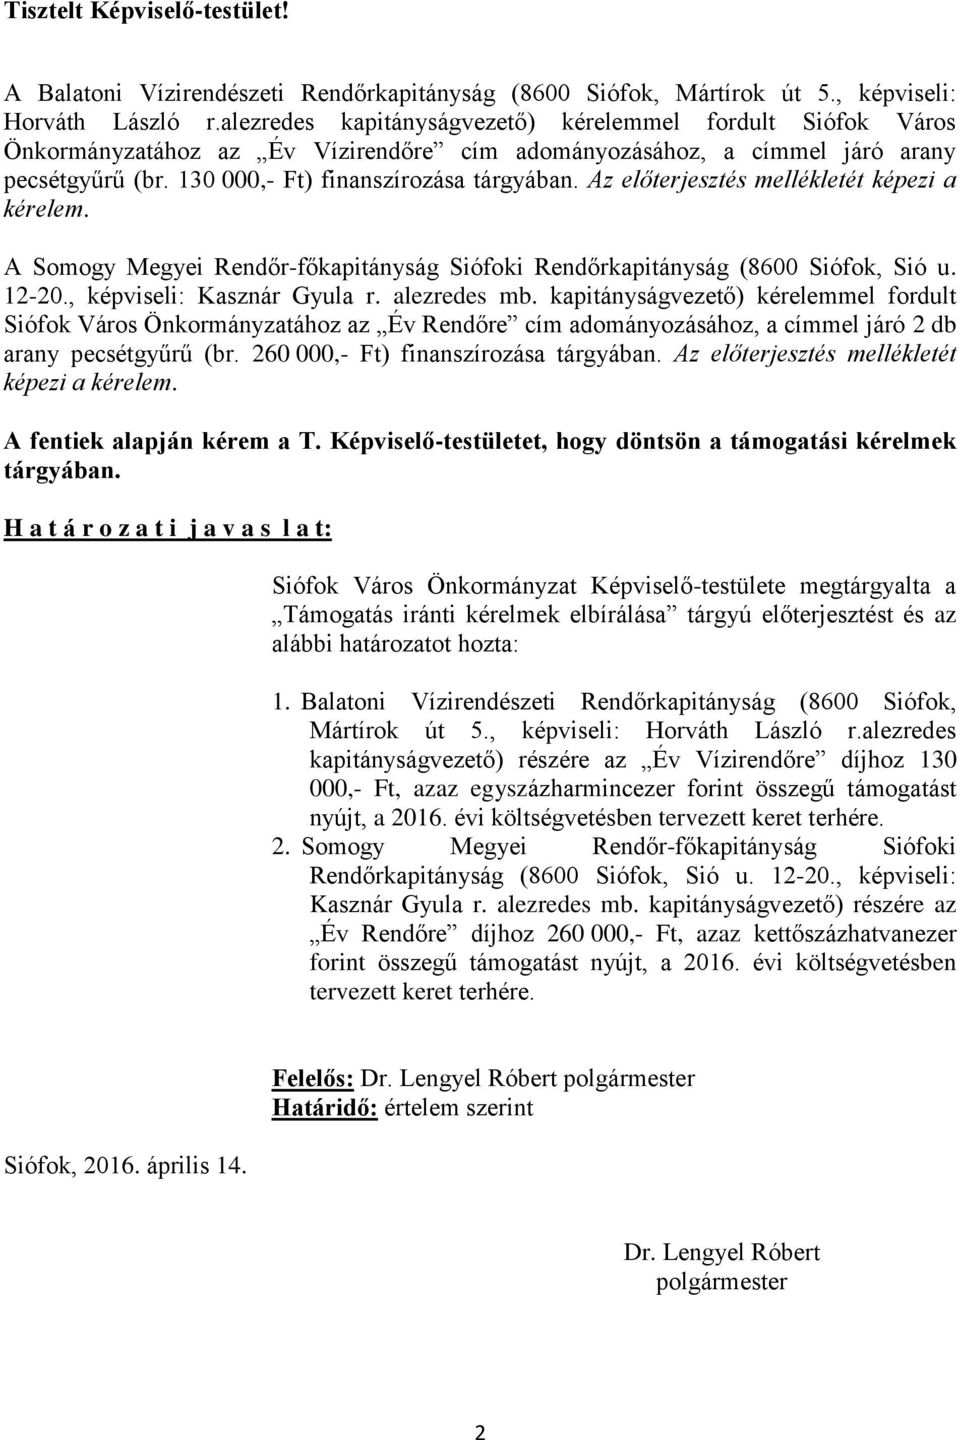 Az előterjesztés mellékletét képezi a kérelem. A Somogy Megyei Rendőr-főkapitányság Siófoki Rendőrkapitányság (8600 Siófok, Sió u. 12-20., képviseli: Kasznár Gyula r. alezredes mb.